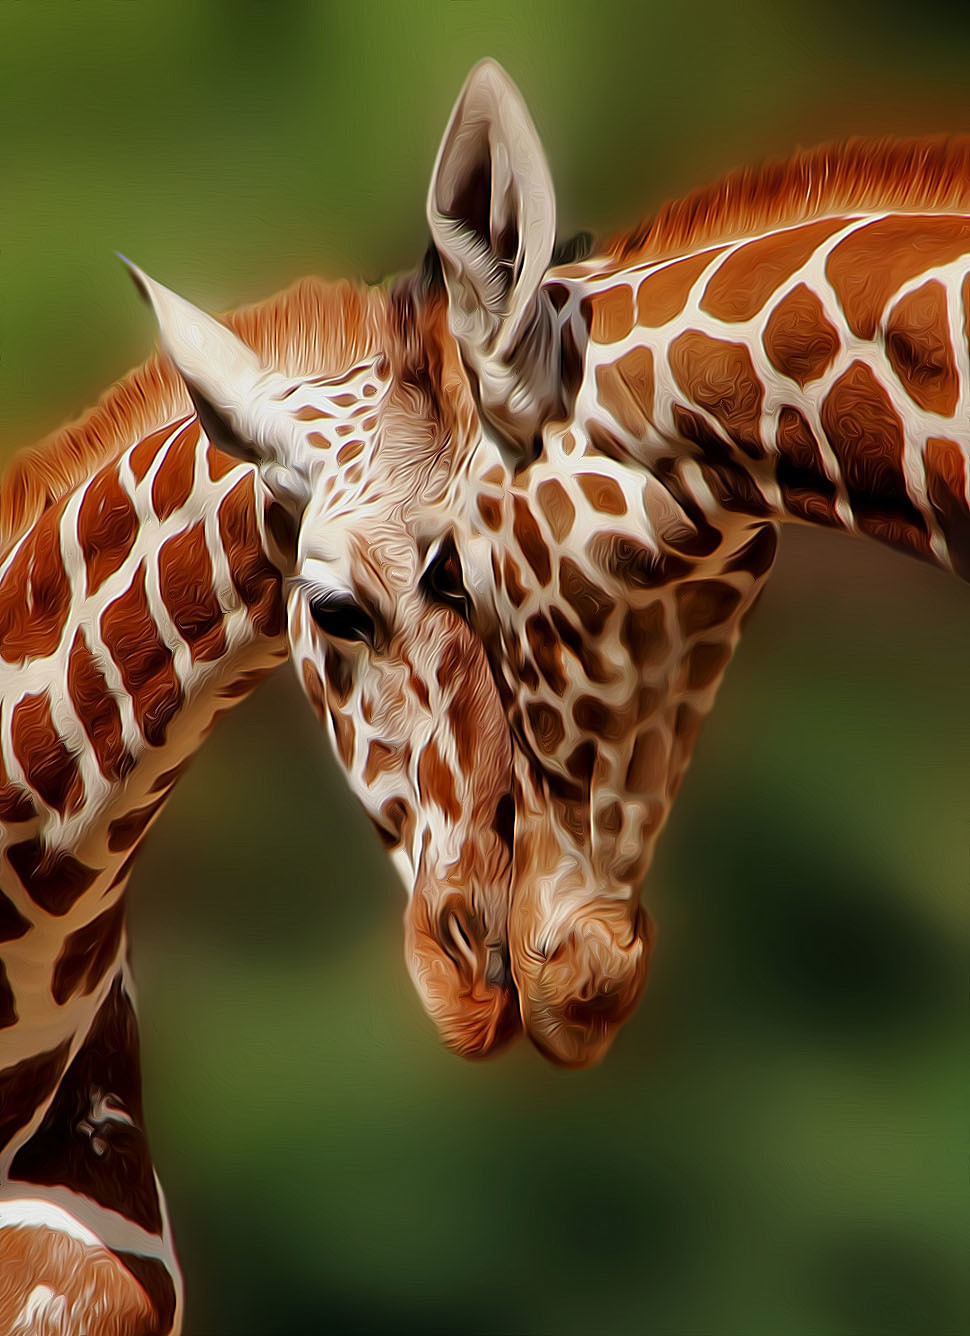 Diam duab ntawm giraffes ntawm sunset nyob rau hauv Serengeti National Park, Tanzania